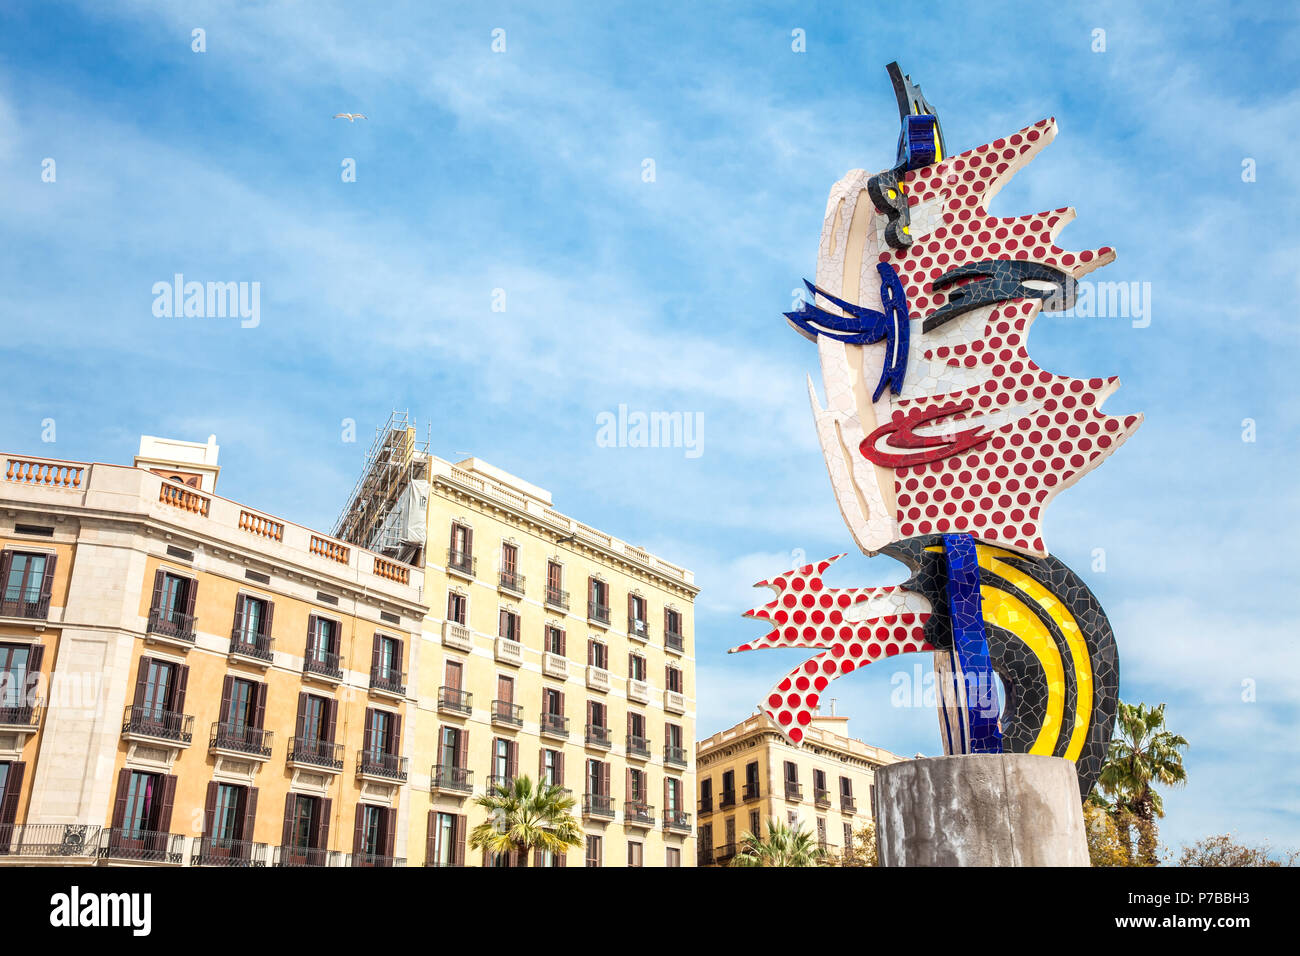 Barcelone - mars, 2018 : La tête de Barcelone ou El Cap de Barcelone une sculpture surréaliste créé par l'artiste pop américain Roy Lichtenstein Banque D'Images